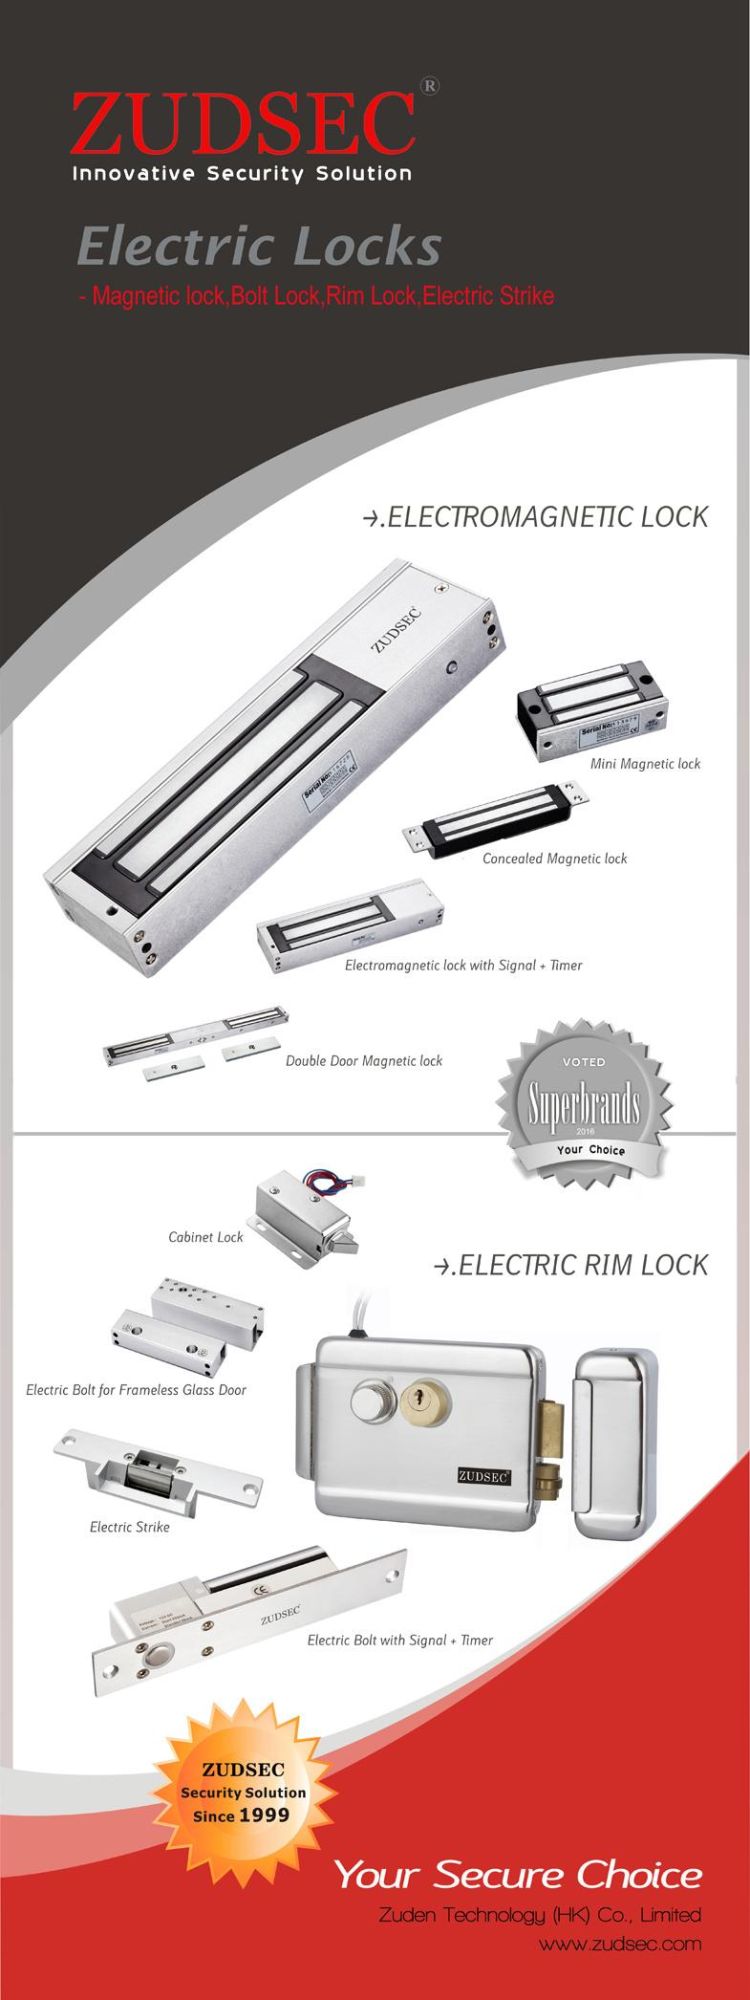 Frameless Glass Door Aluminum UL Magnetic Lock Bracket